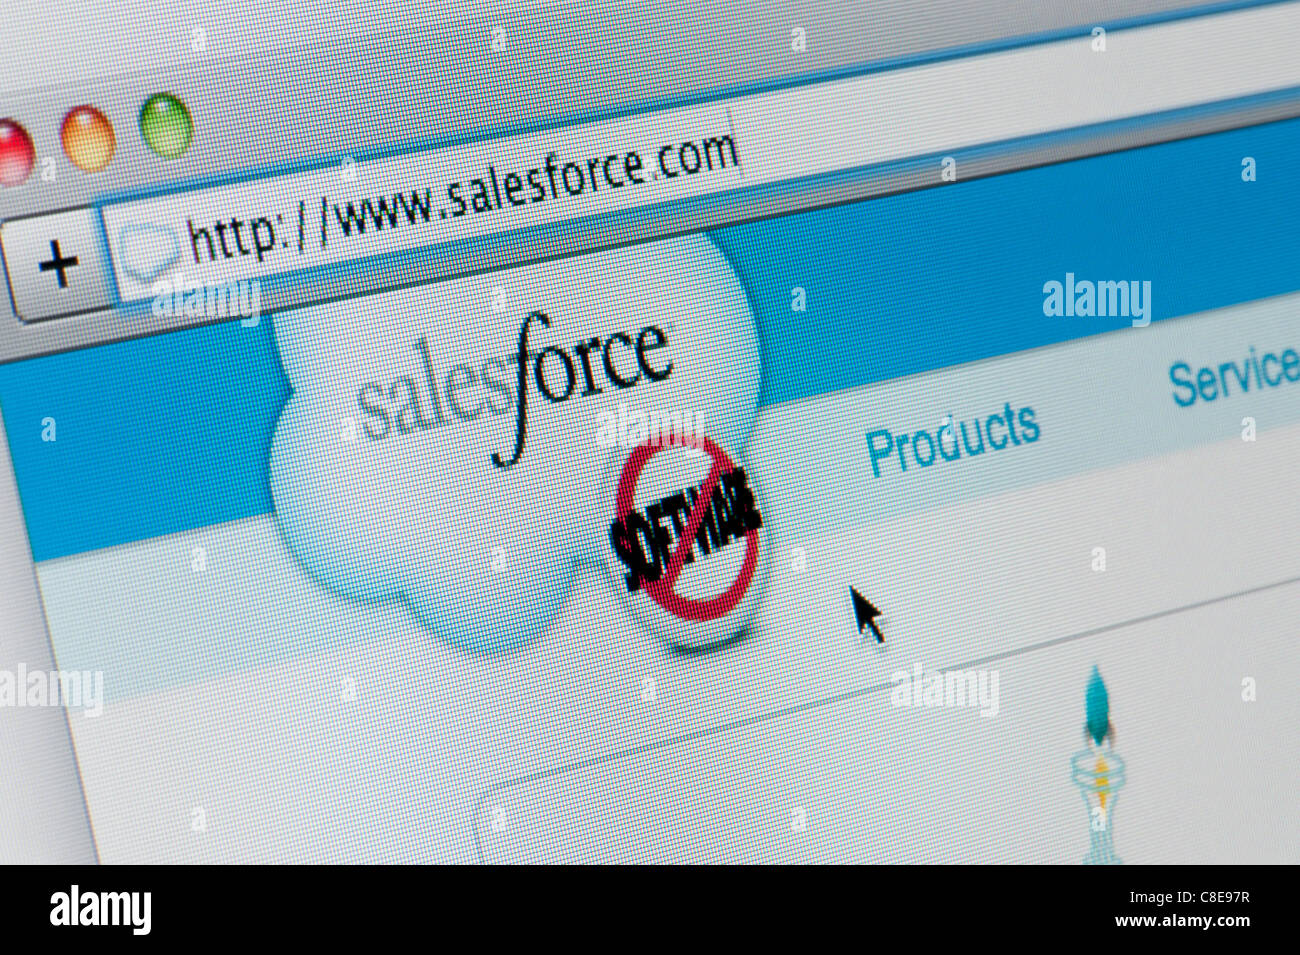 Nahaufnahme von der Sales Force Logo, wie auf ihrer Website zu sehen. (Nur zur redaktionellen Verwendung: print, TV, e-Book und redaktionelle Webseite). Stockfoto